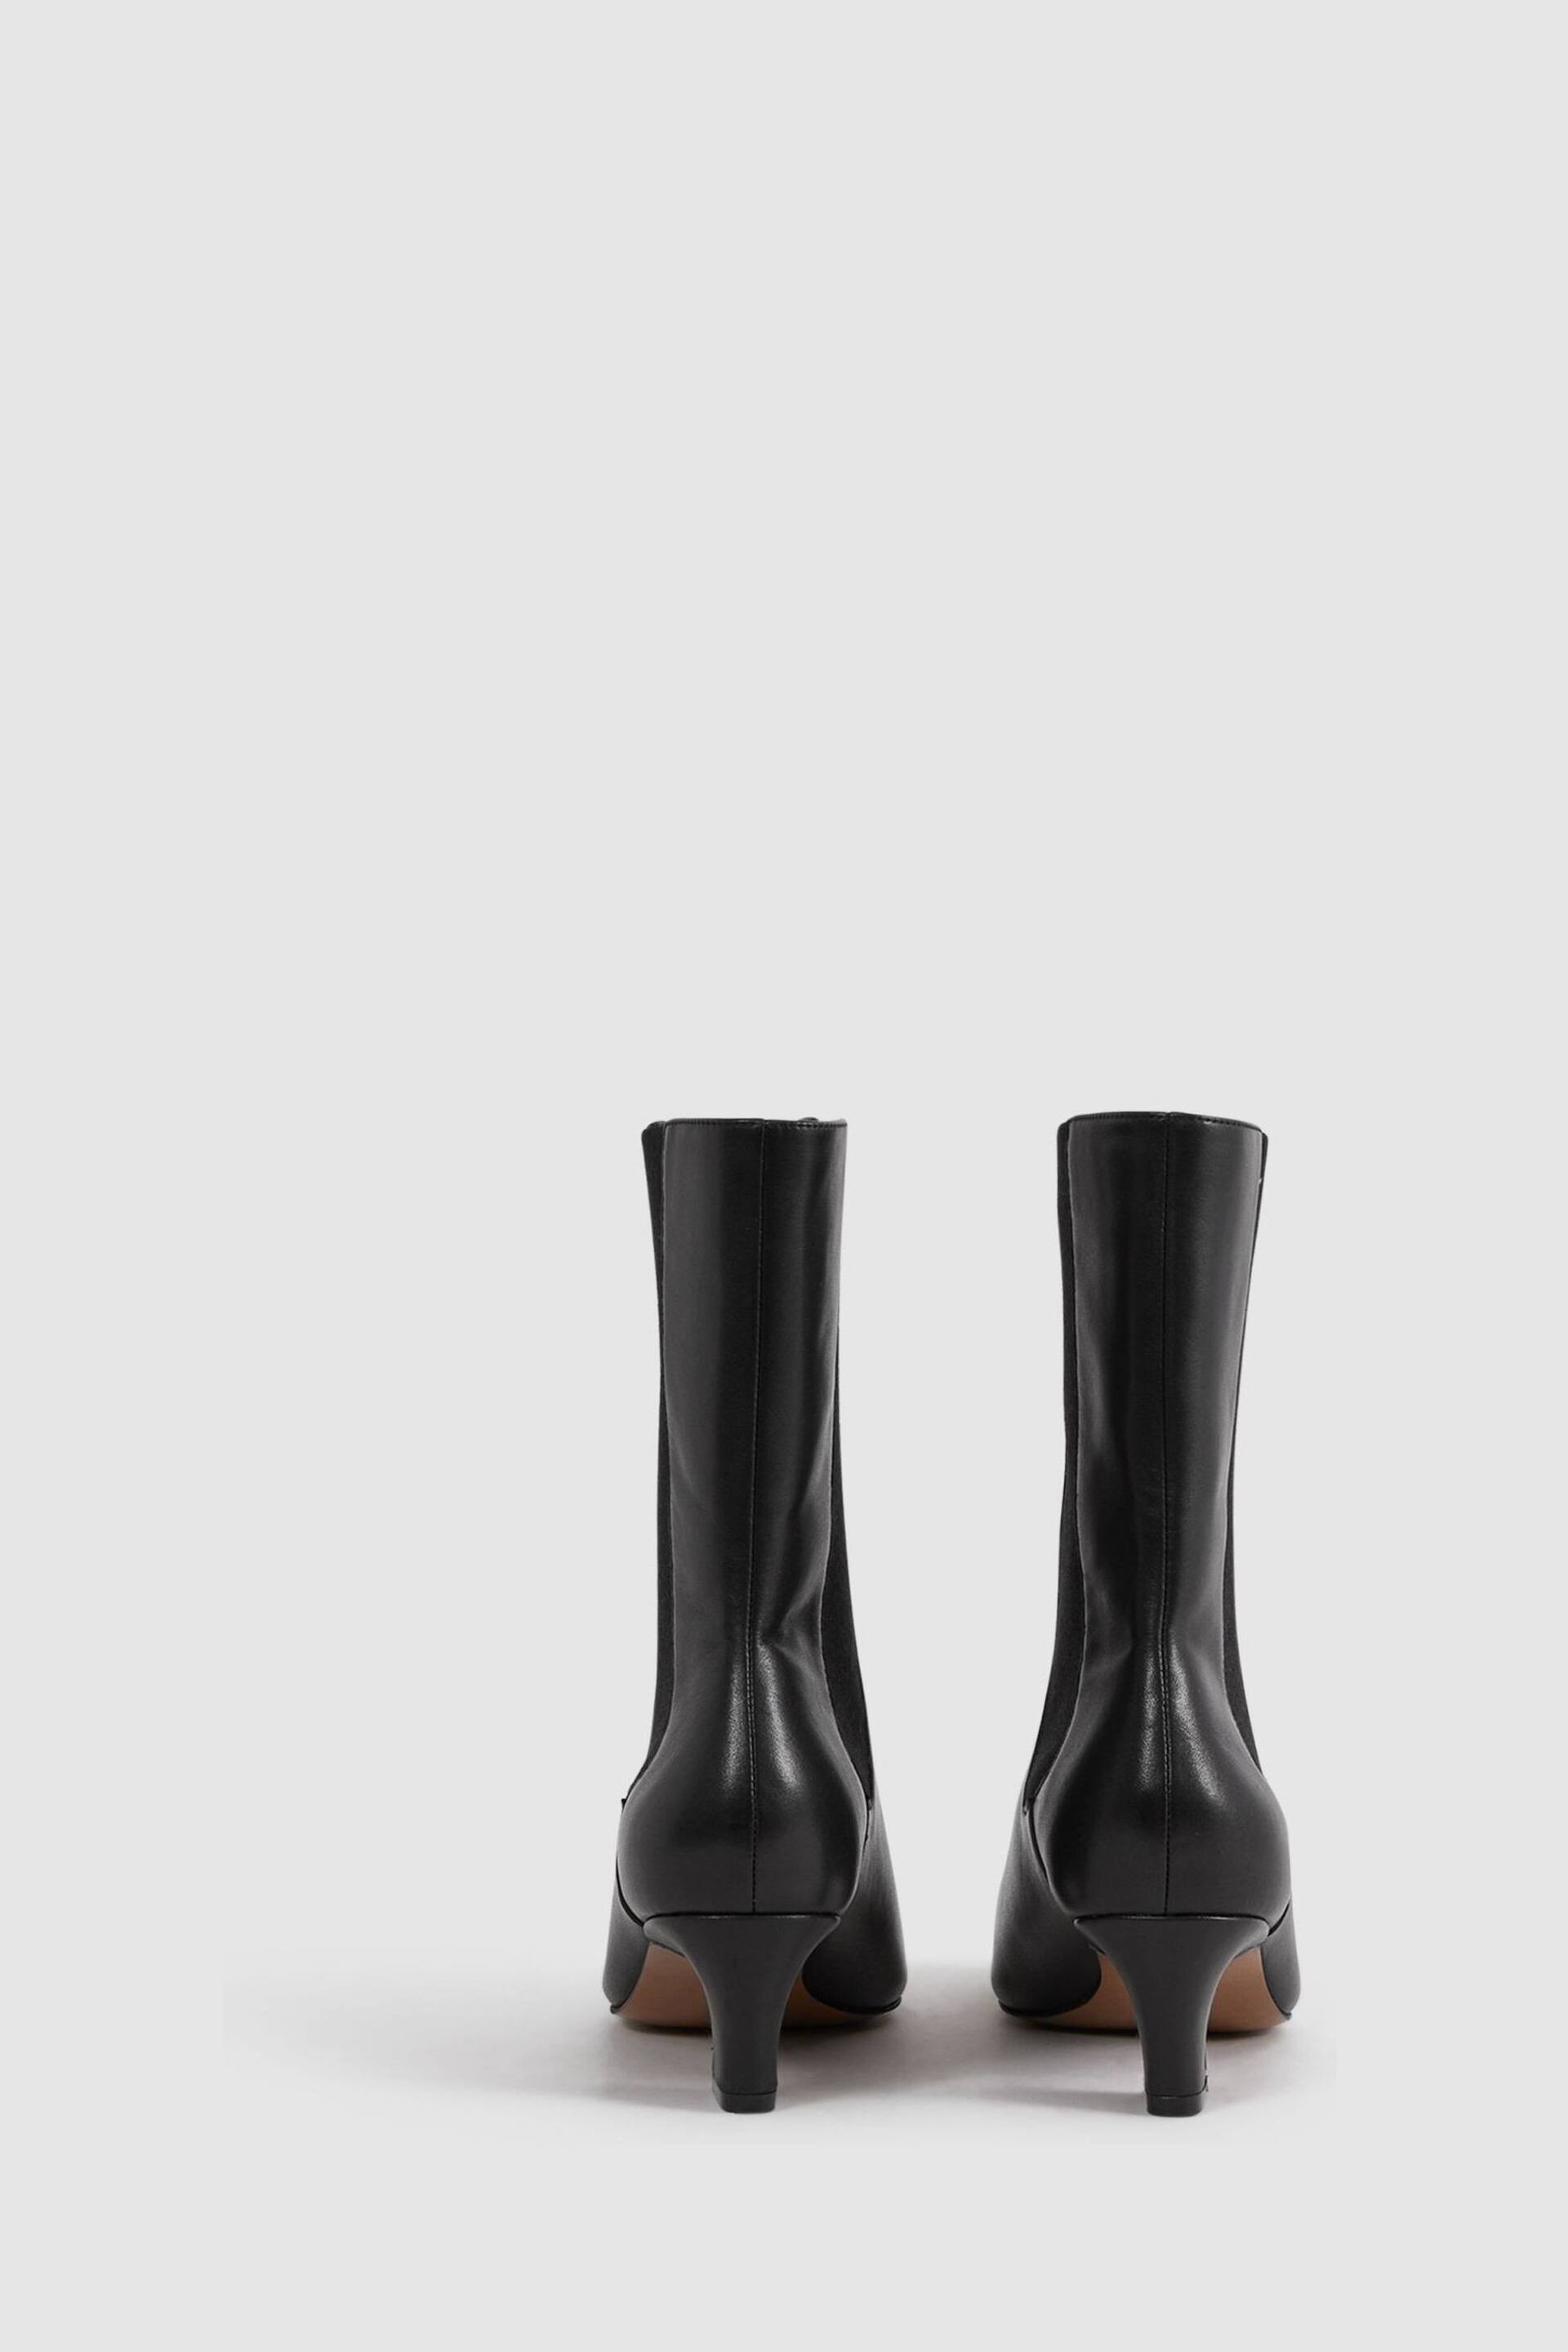 Reiss Black Mina Leather Kitten Heel Chelsea Boots - Image 4 of 5